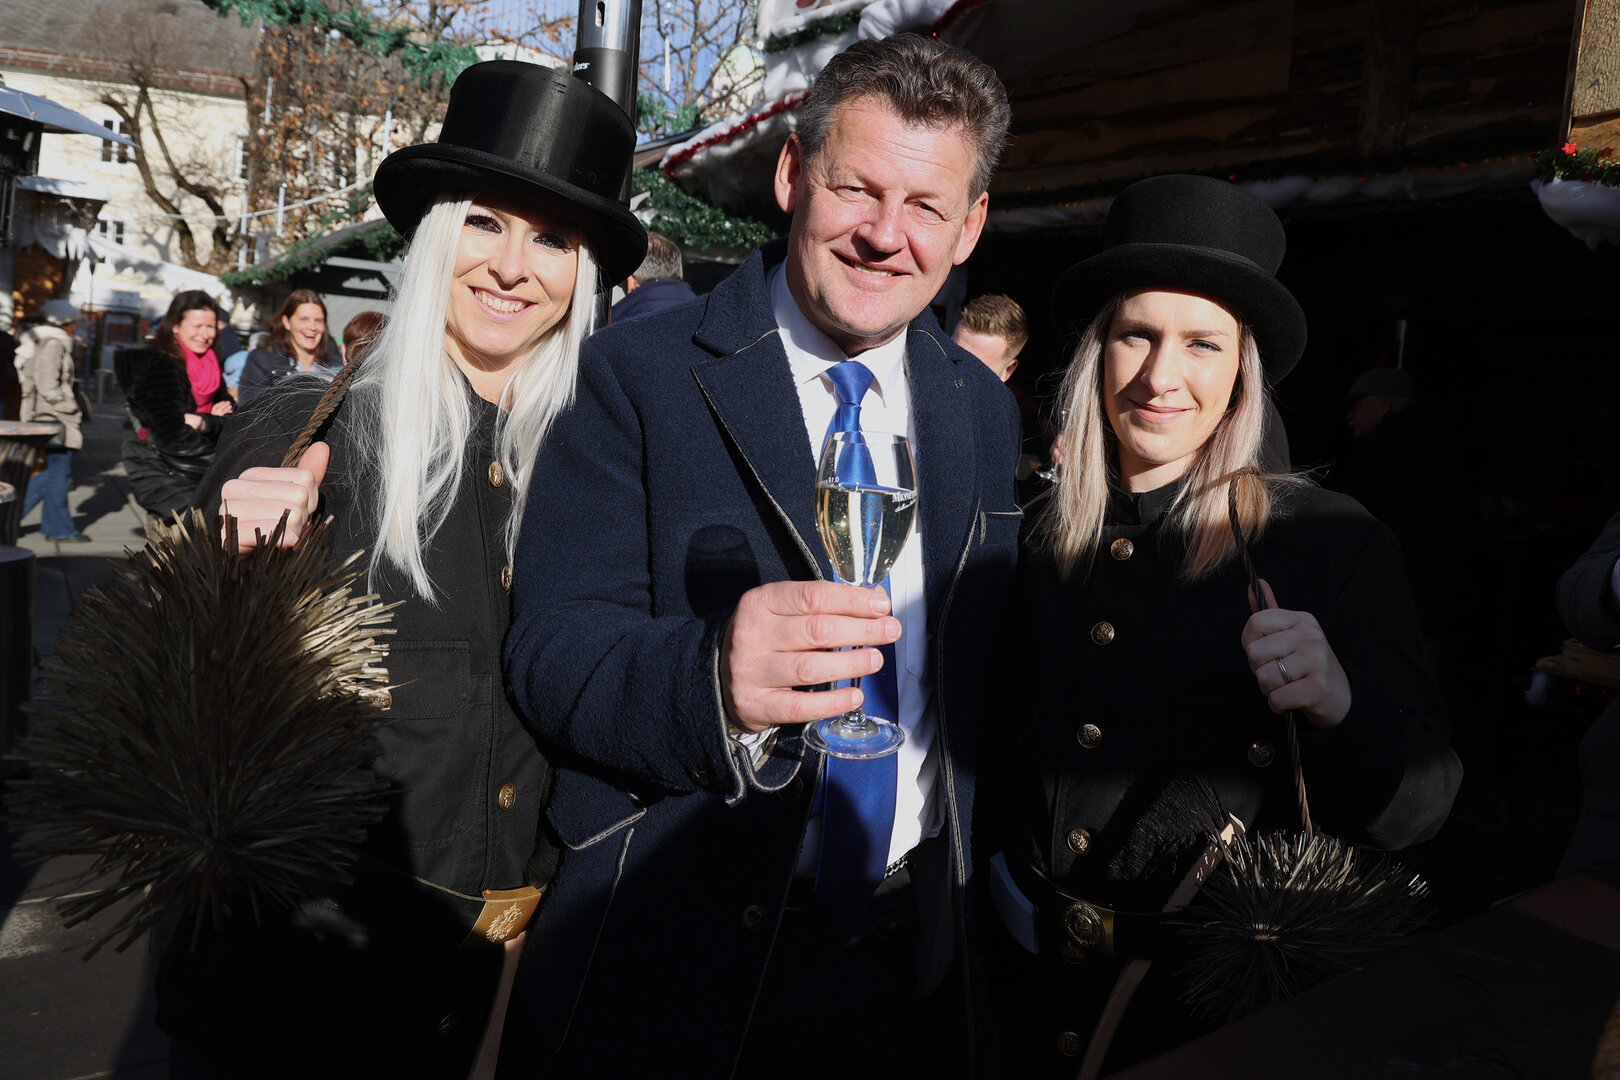 Bürgermeister Christian Scheider wünschte am Samstag allen  Klagenfurterinnen und Klagenfurtern einen guten Rutsch ins neue Jahr.  Foto: StadtKommunikation/Wajand